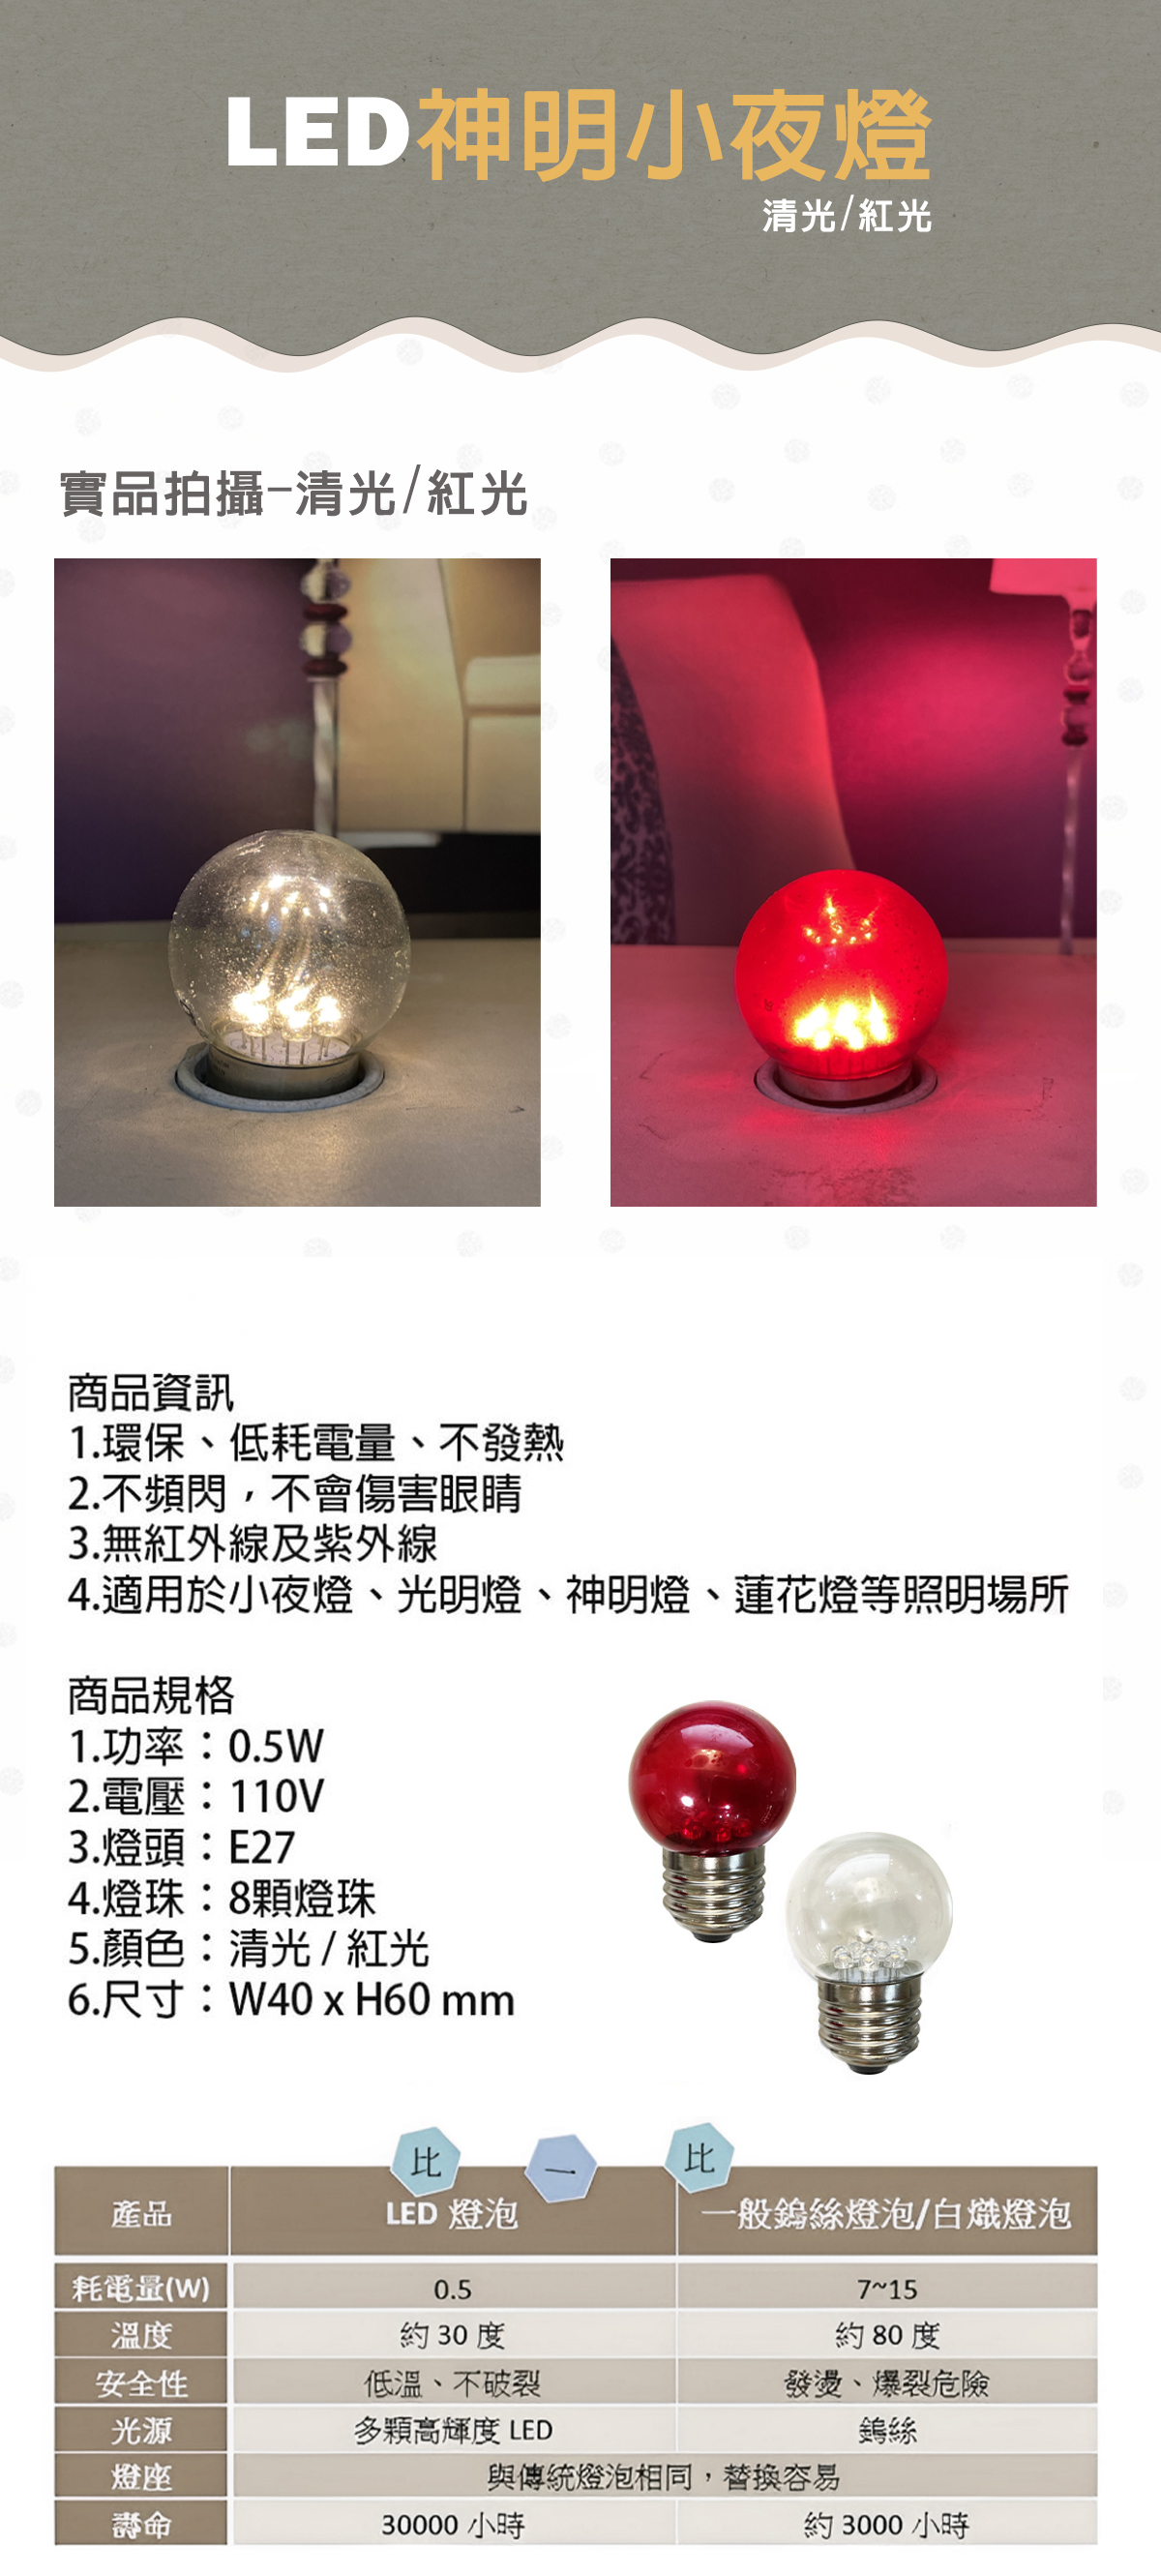 LED E27 0.5W 神明燈 小夜燈 清光/紅光 單電壓110V